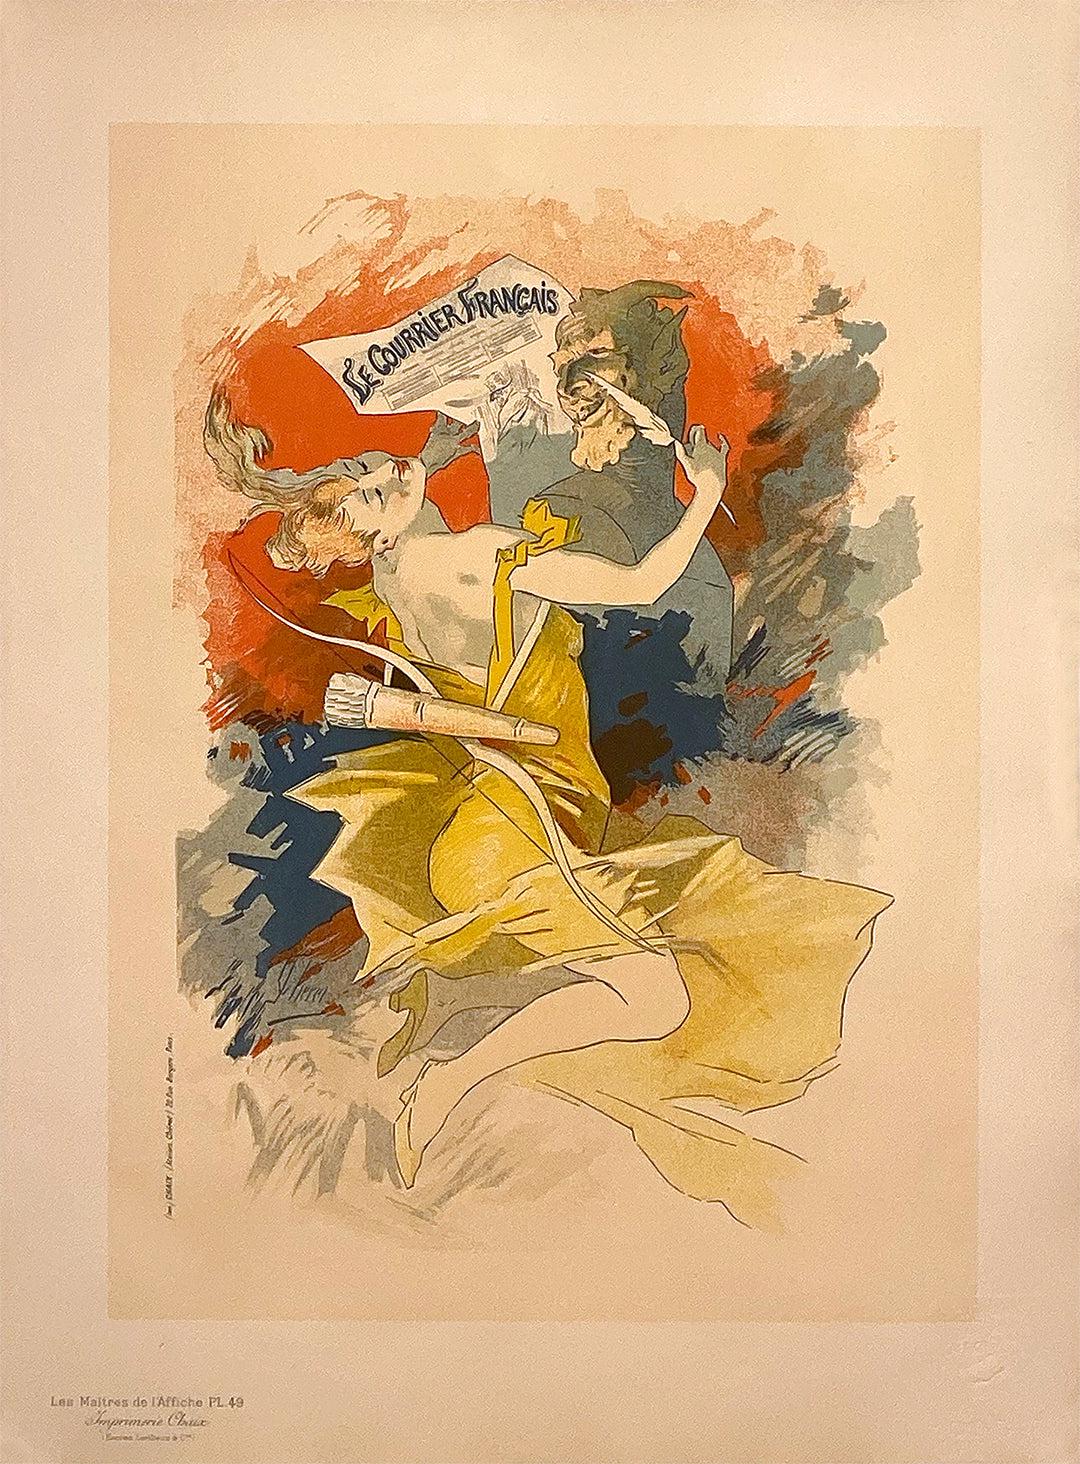 Original Maitres de L'Affiche Poster PL 49 - Le Courier Francais  by Jules Cheret